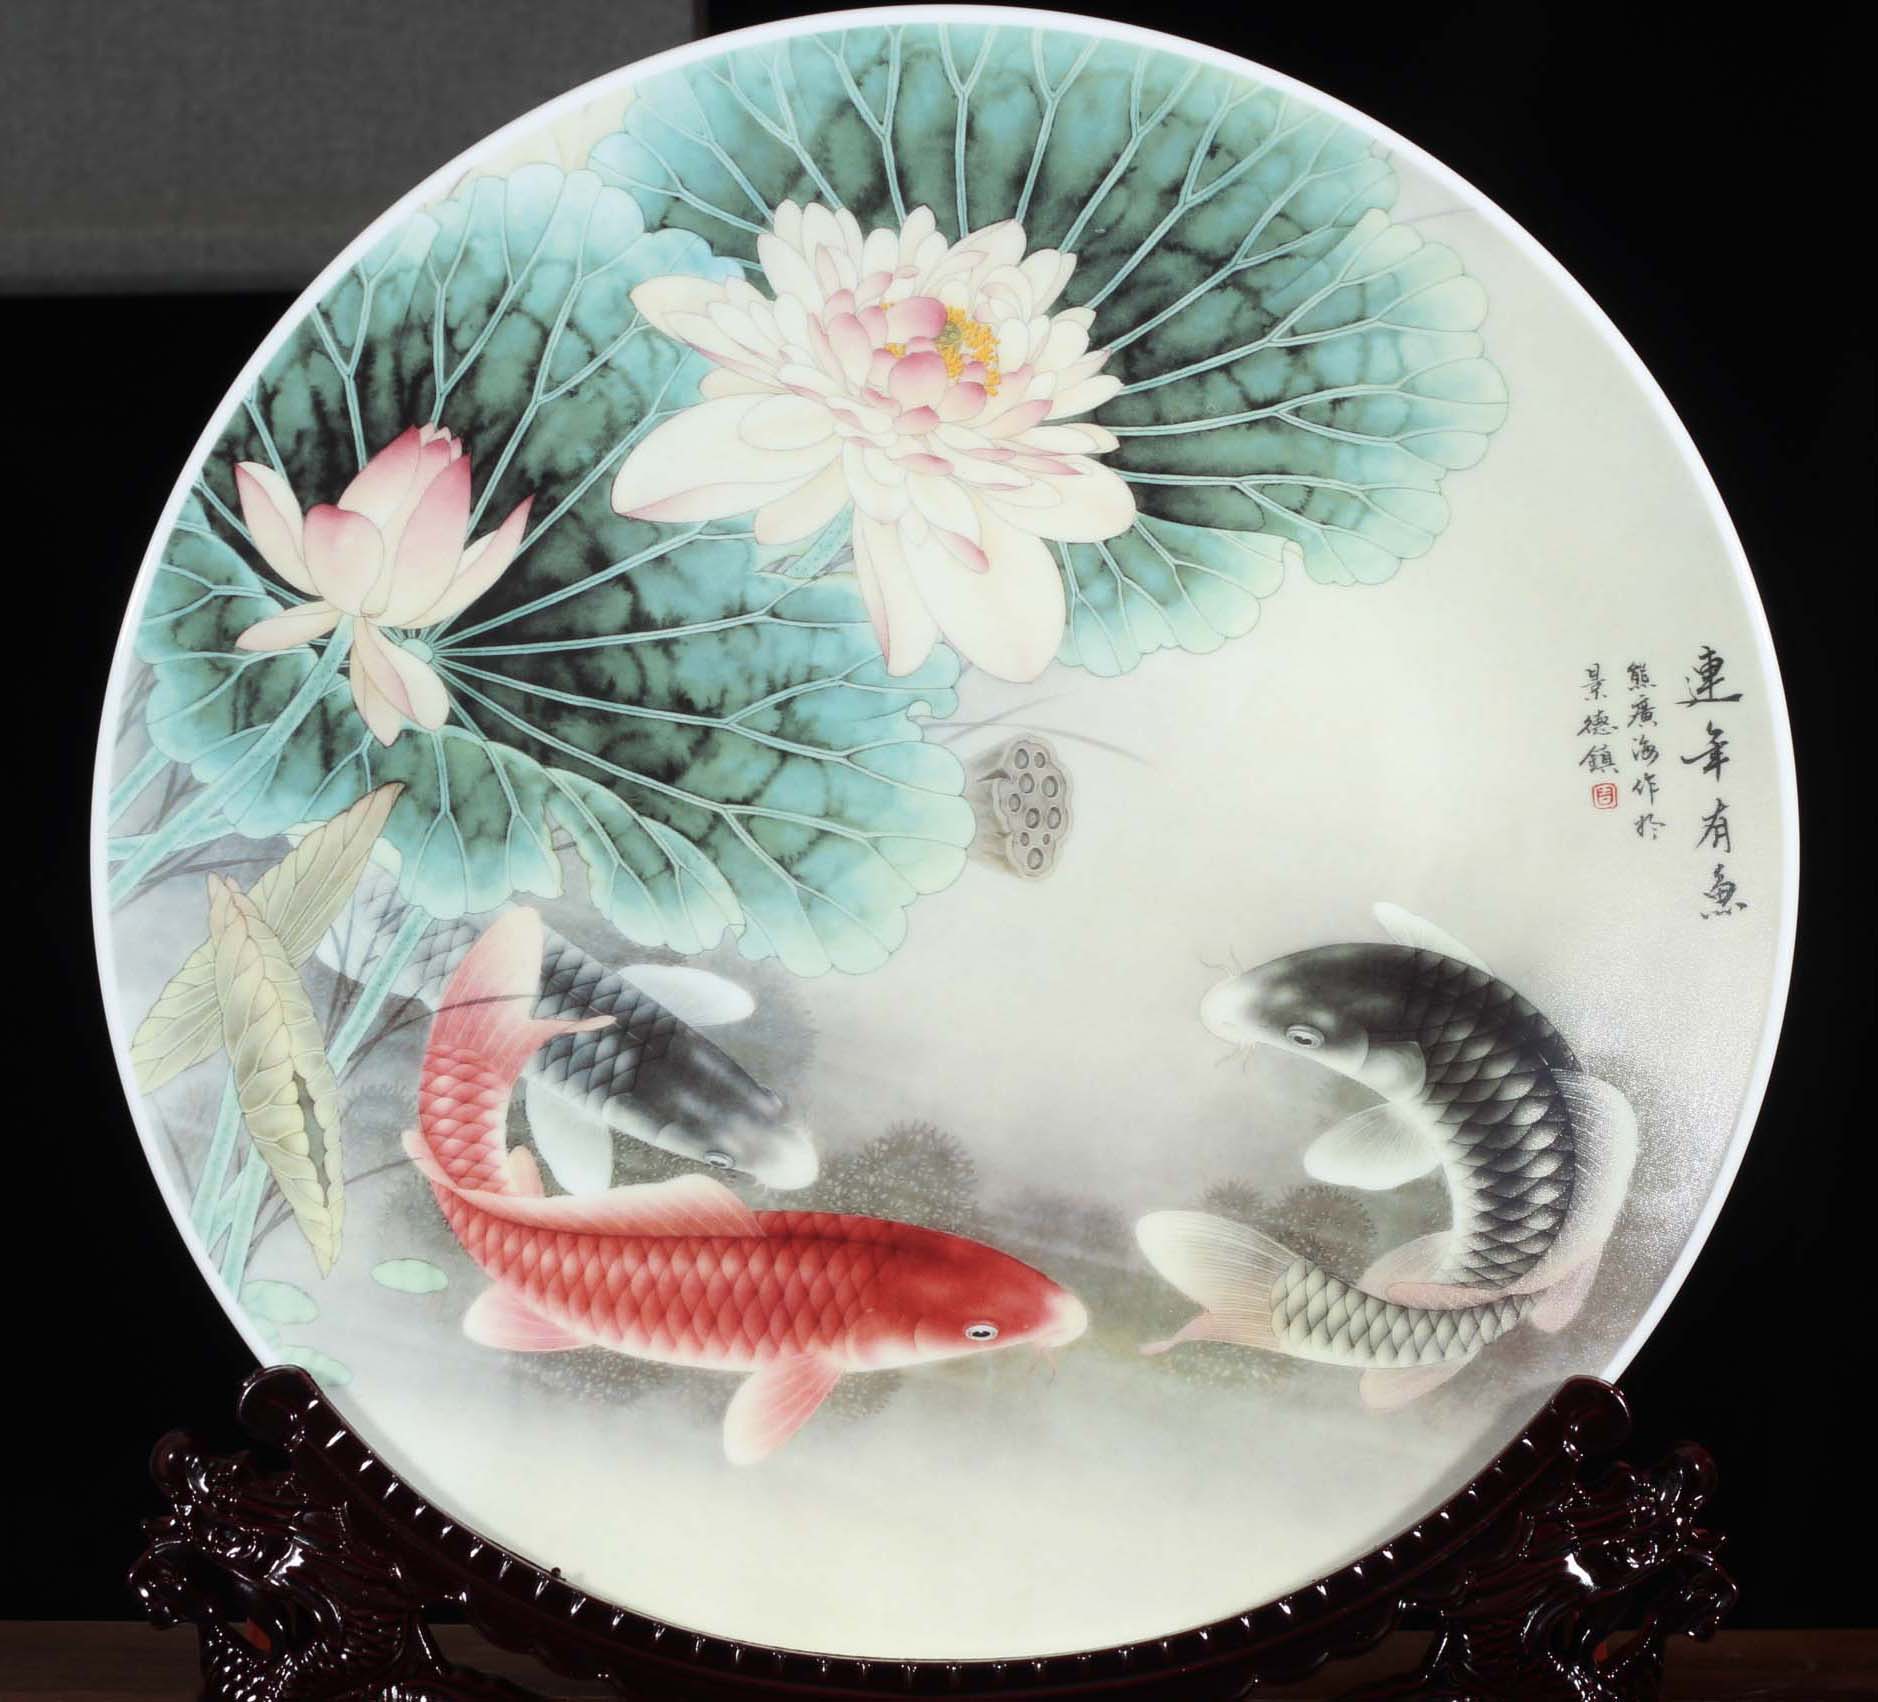 Jingdezhen porcelain lotus carp culture decoration plate 35 cm diameter red fish culture plate is placed